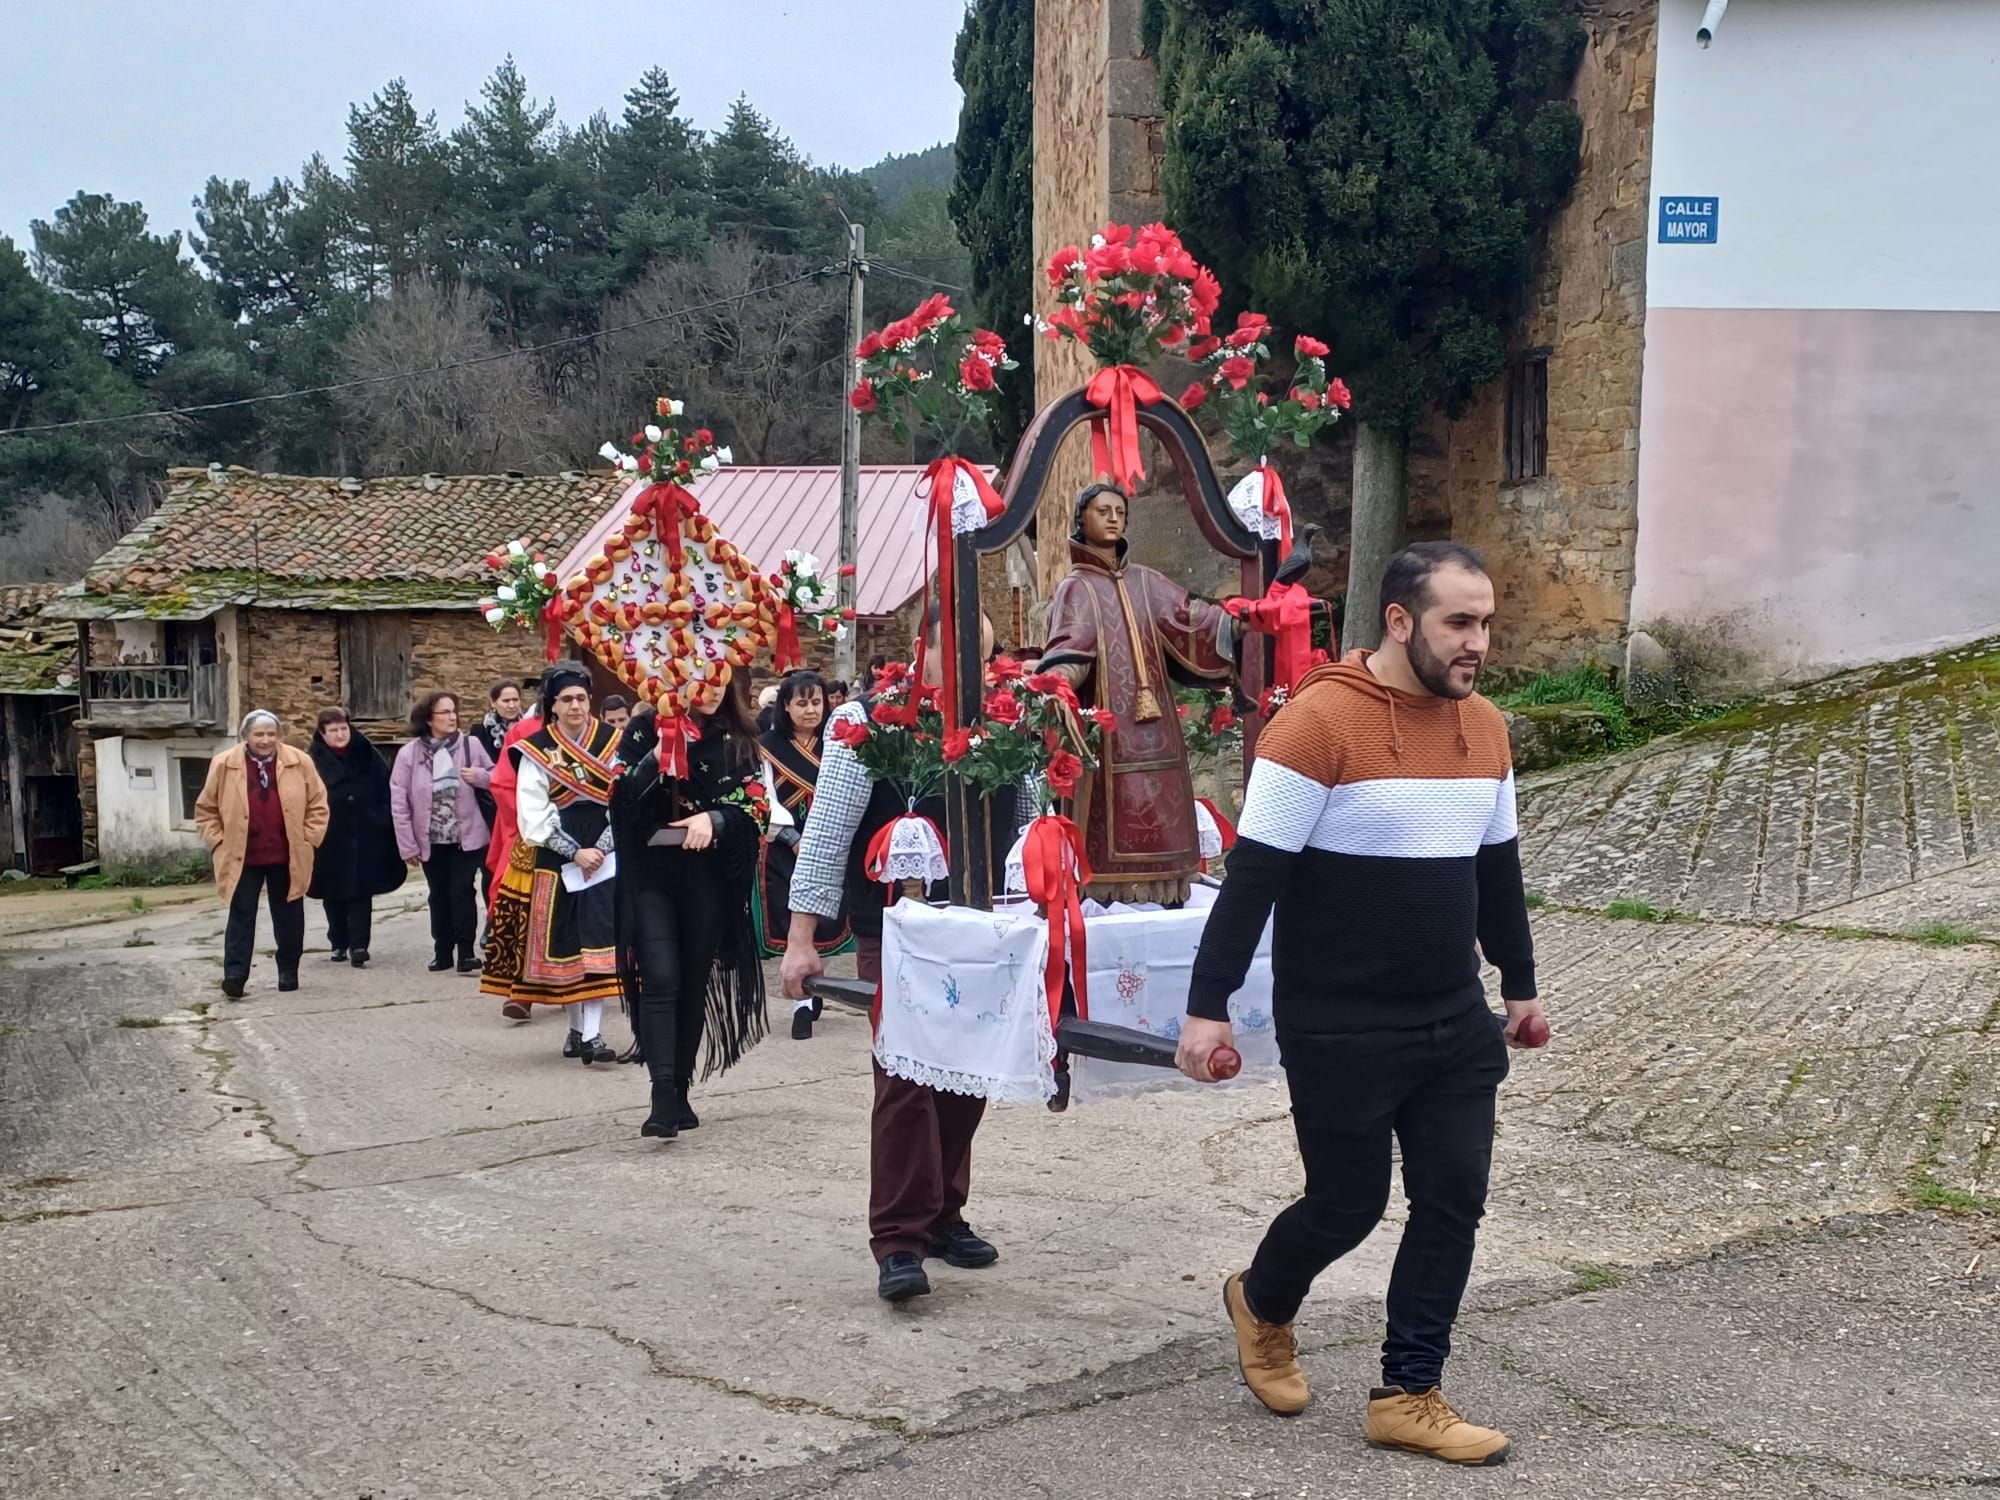 GALERÍA | Procesión en San Vicente de la Cabeza en honor a su patrón